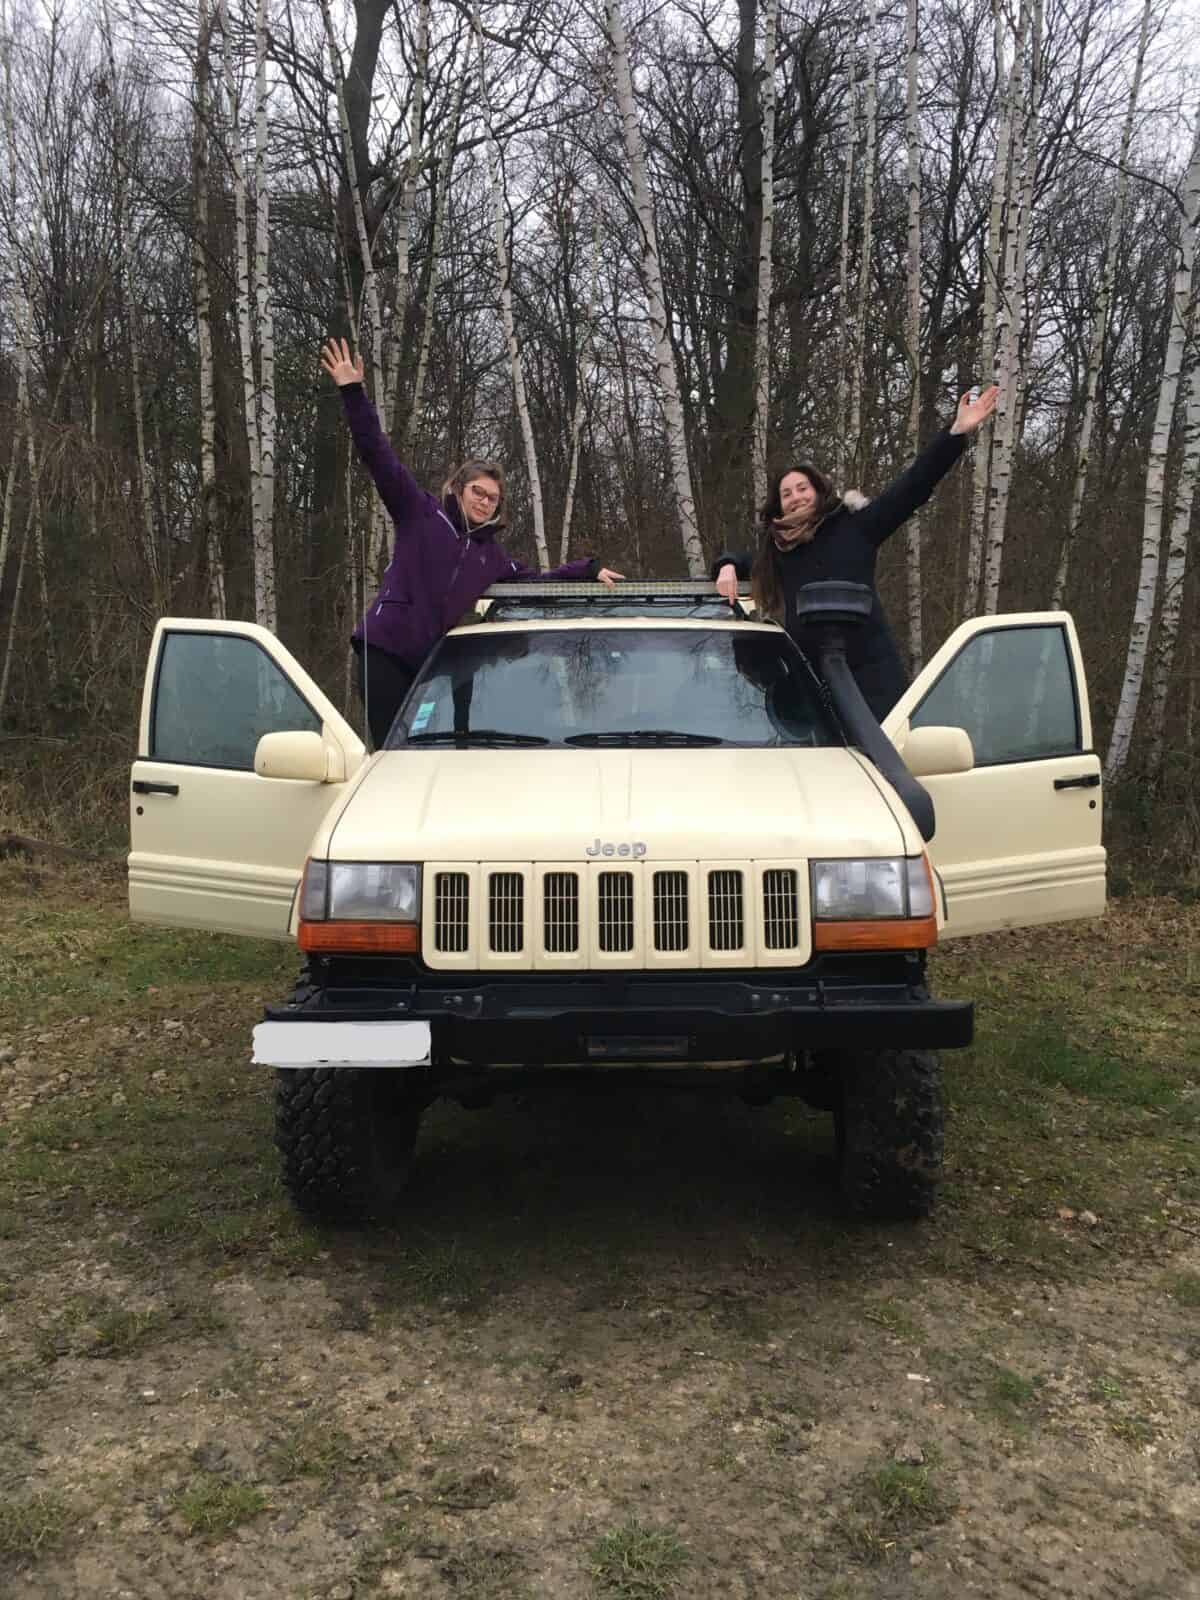 deux femmes heureuses de participer à un stage 4x4 likers à bord de leur jeep blanche